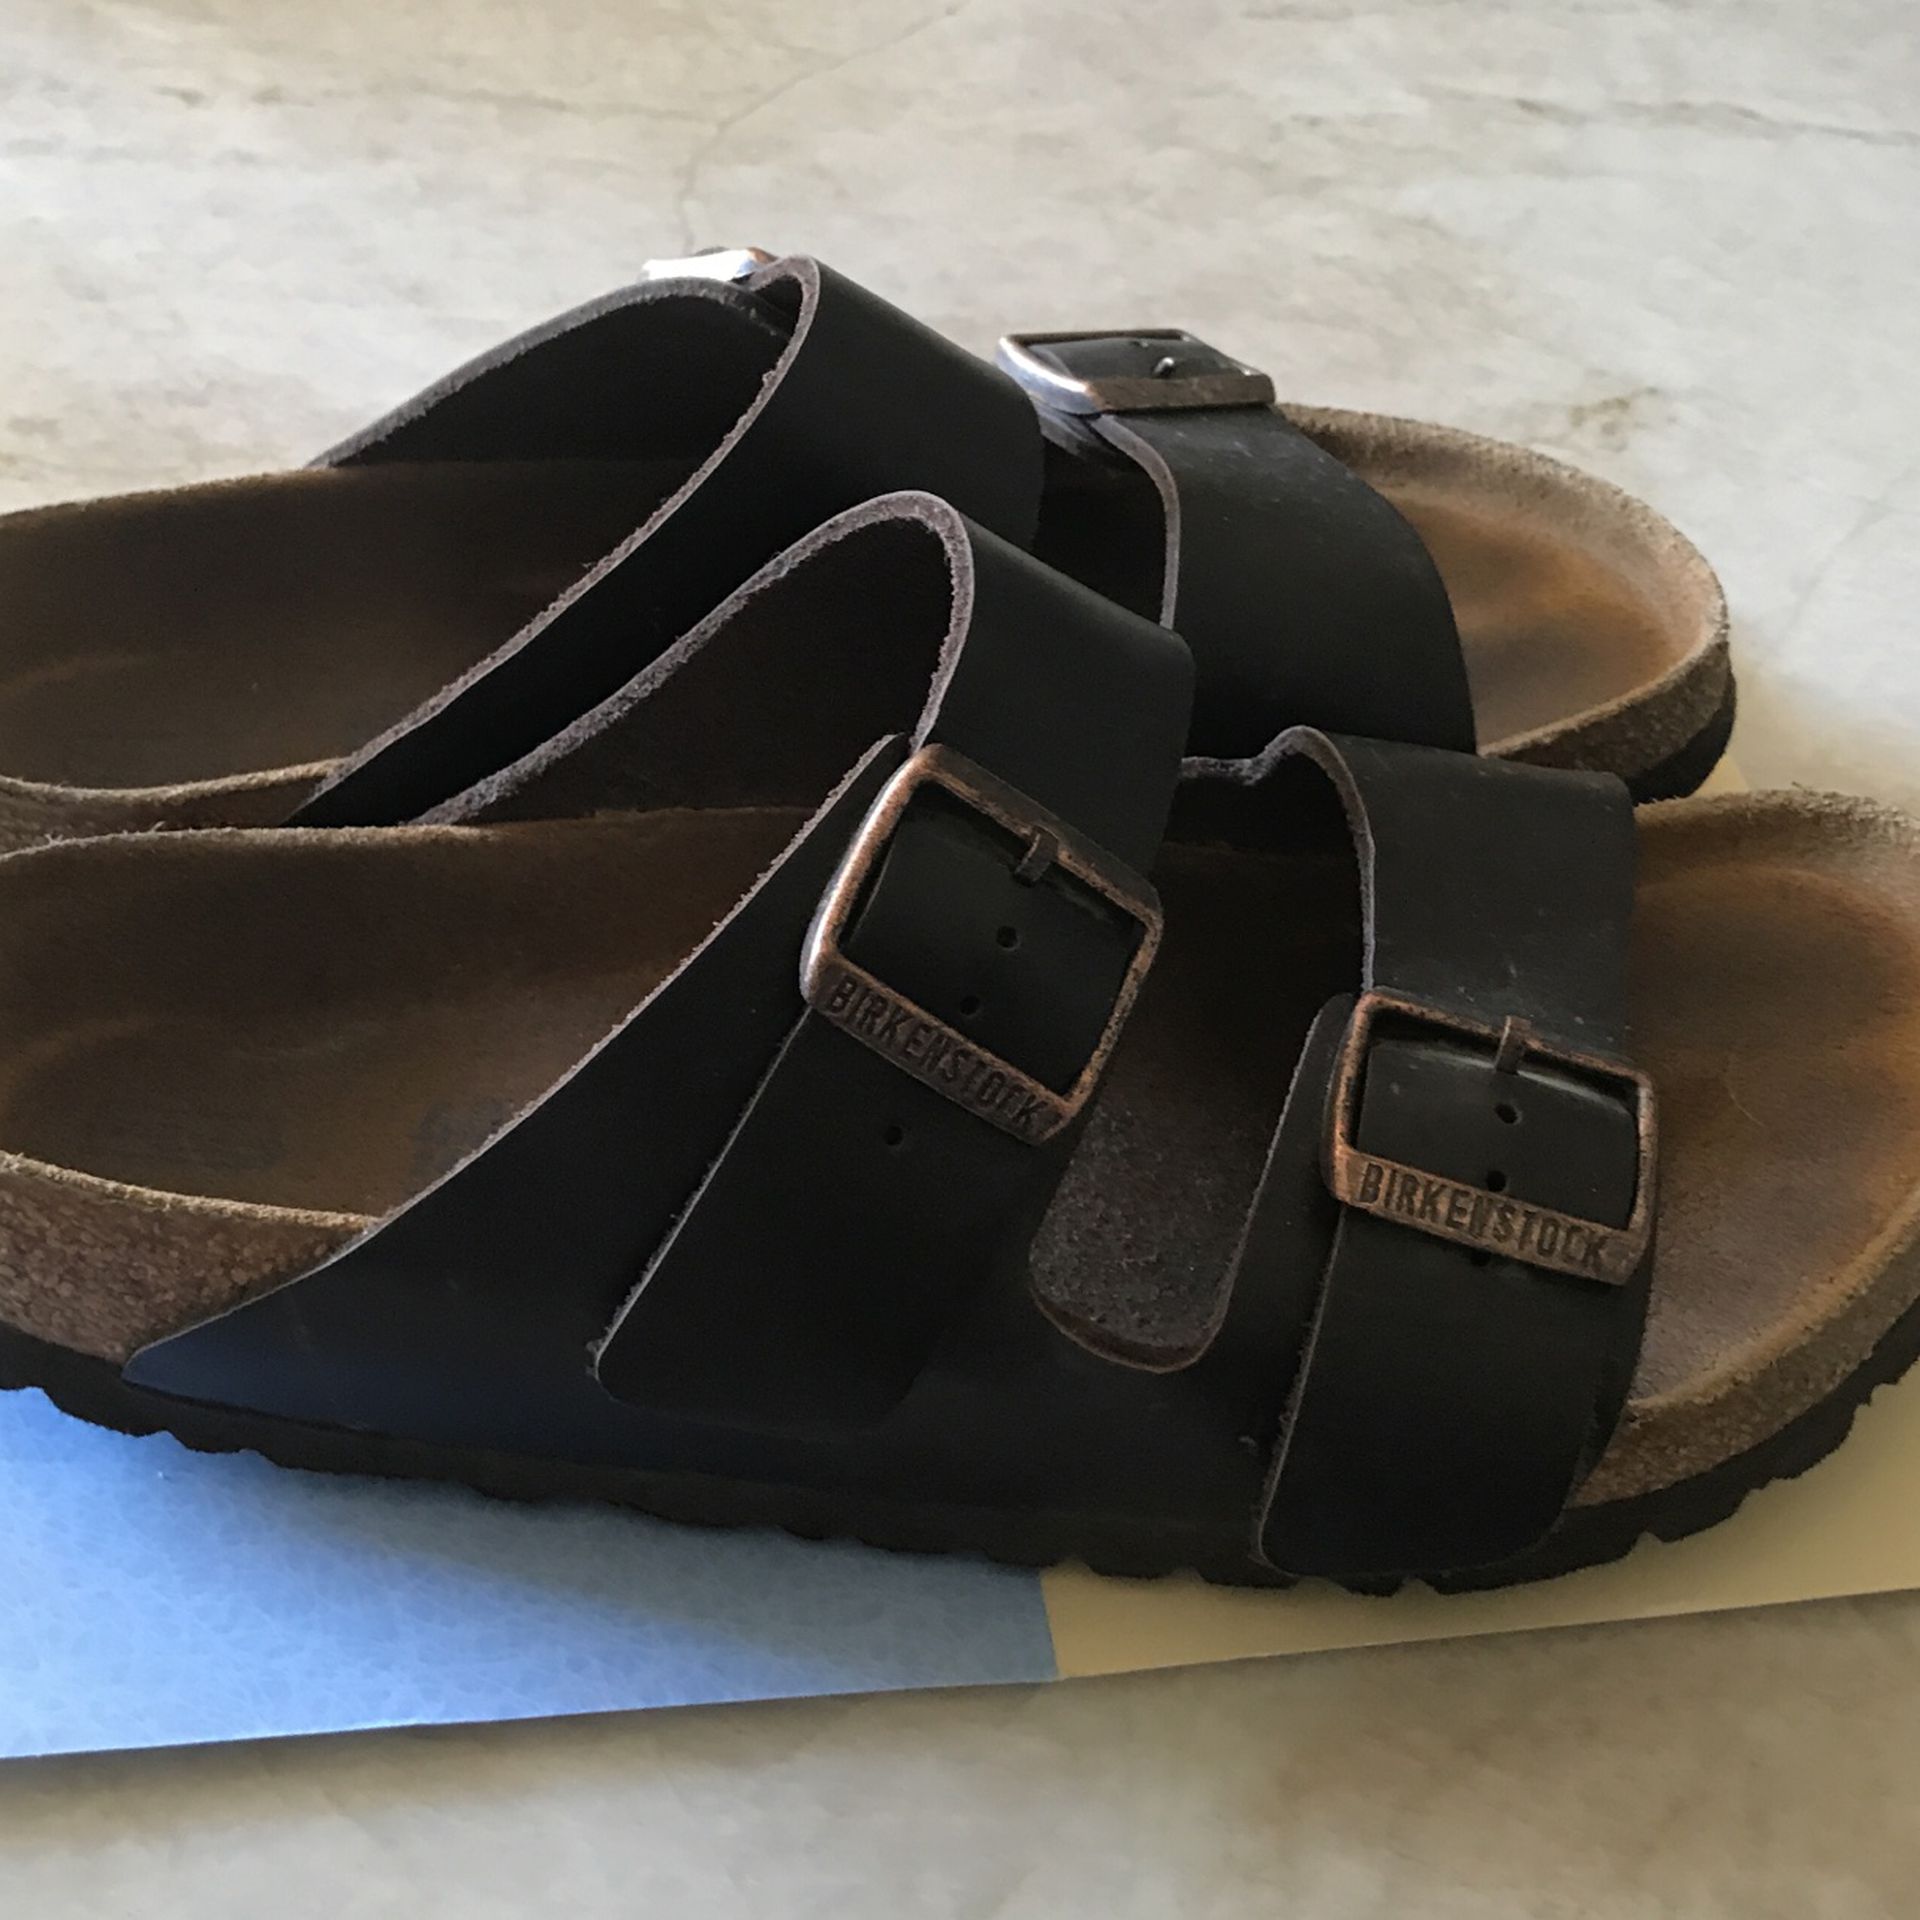 Birkenstock brand, dark brown, double strap sandals. Size 40.  